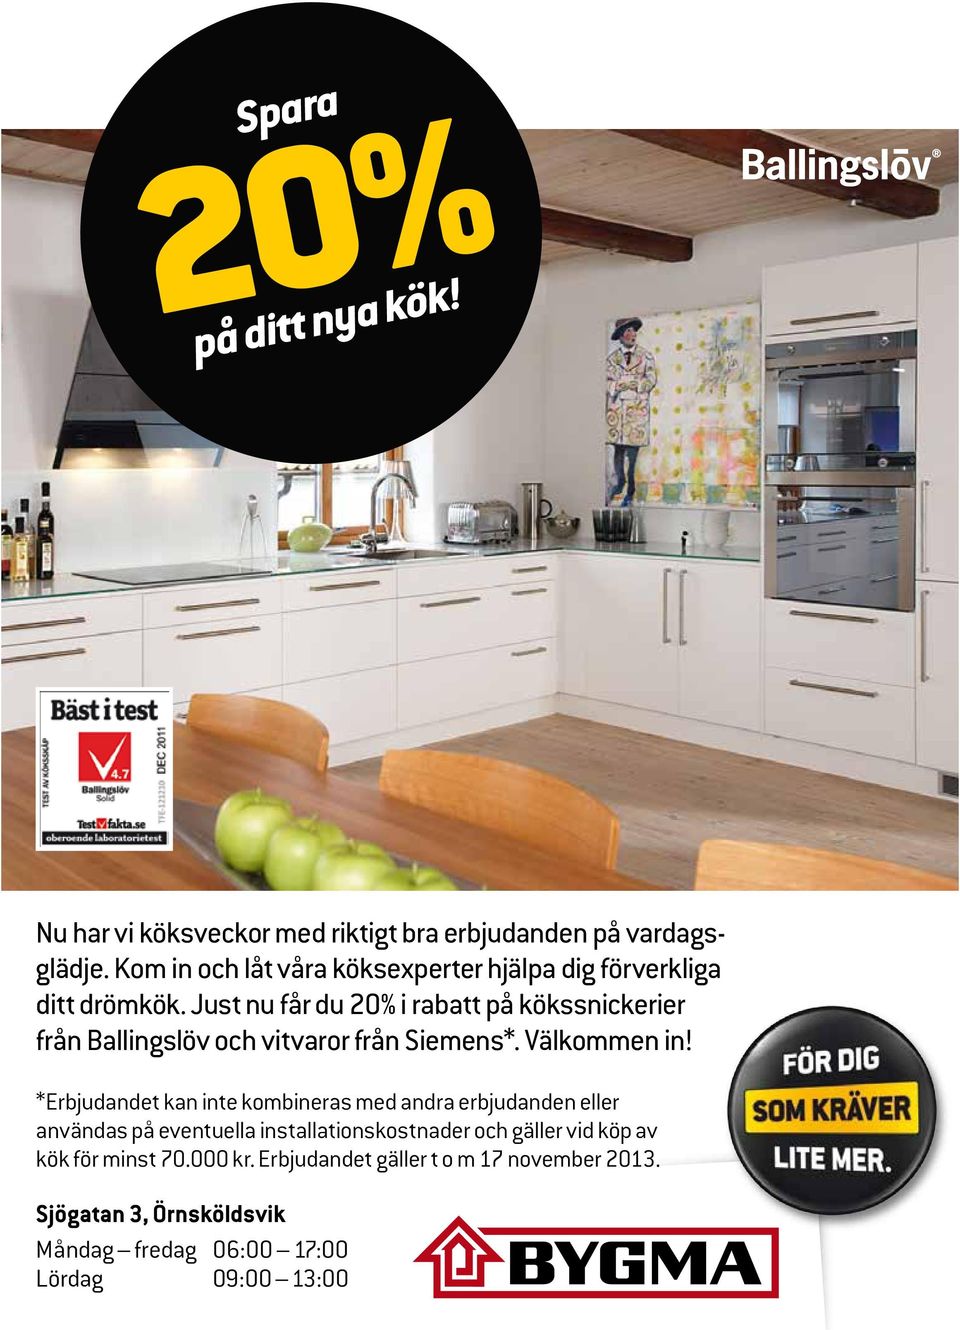 Just nu får du 20% i rabatt på kökssnickerier från Ballingslöv och vitvaror från Siemens*. Välkommen in!